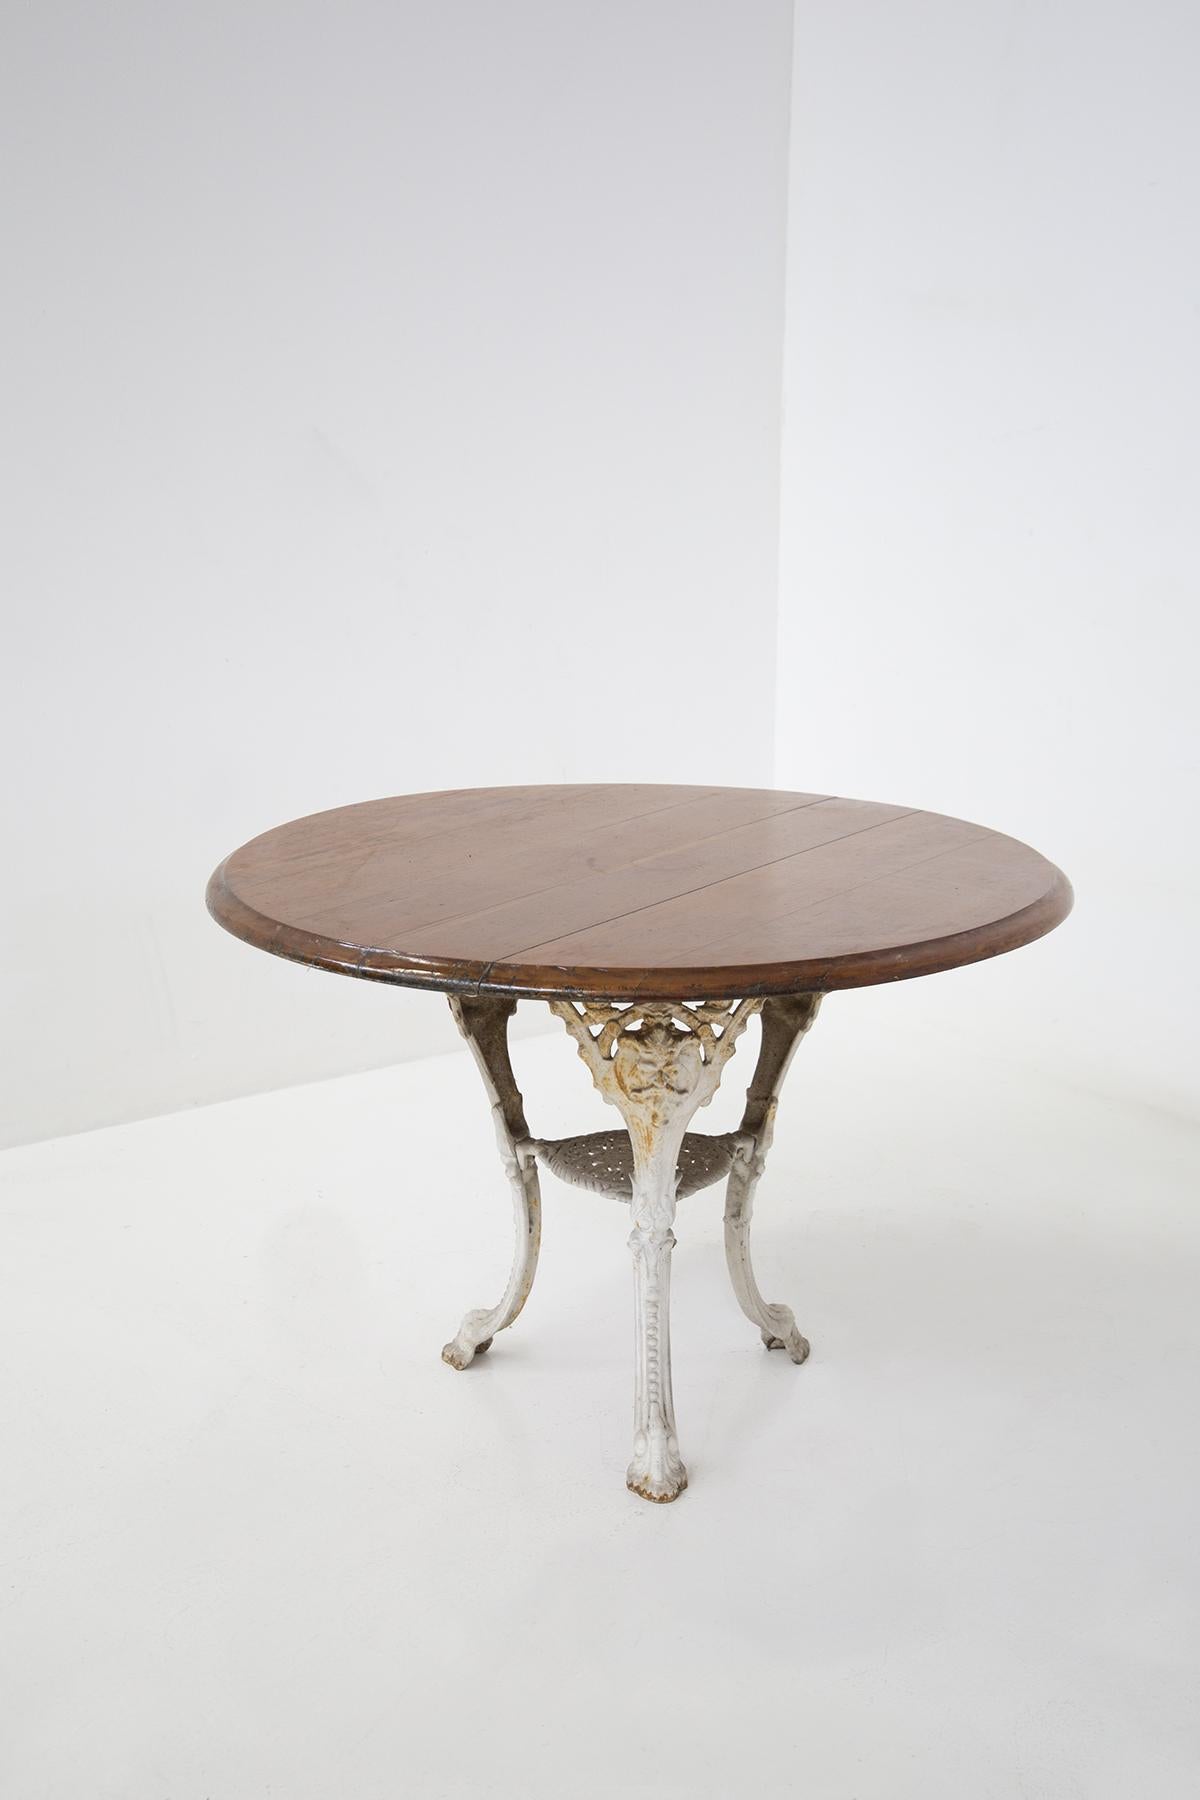 Raffinierter englischer viktorianischer Tisch aus Gusseisen. Der Tisch ist aus weiß lackiertem Gusseisen gefertigt. Großartige Verarbeitung des Gusseisens mit Ornamenten und floralen Elementen, beachten Sie die Verarbeitung der Füße in Form einer